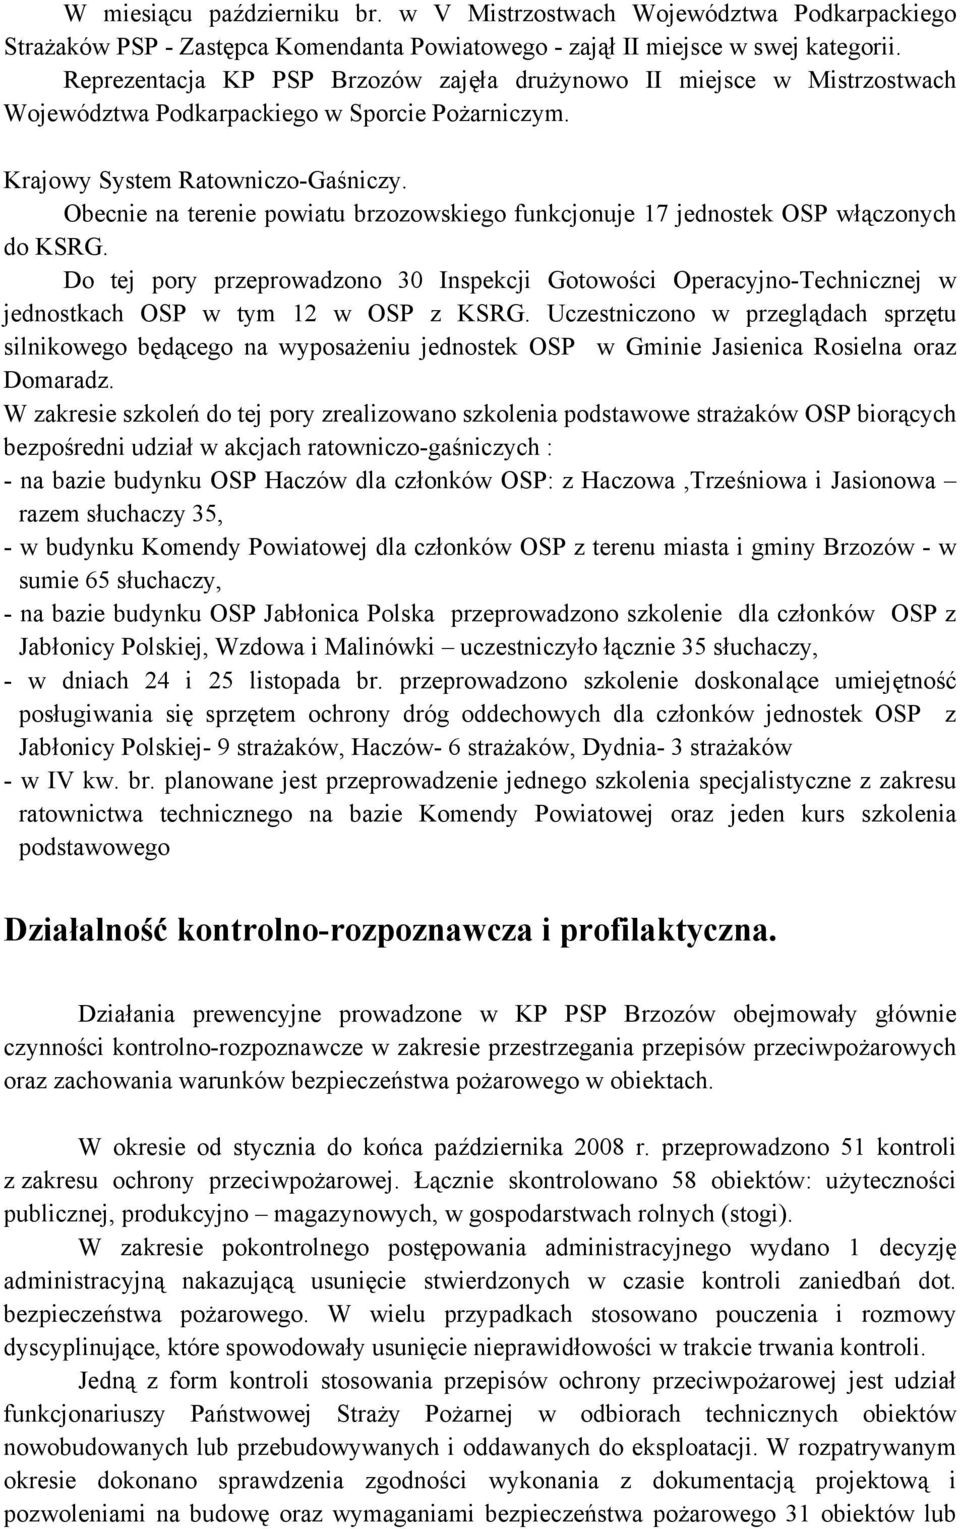 Obecnie na terenie powiatu brzozowskiego funkcjonuje 17 jednostek OSP włączonych do KSRG.